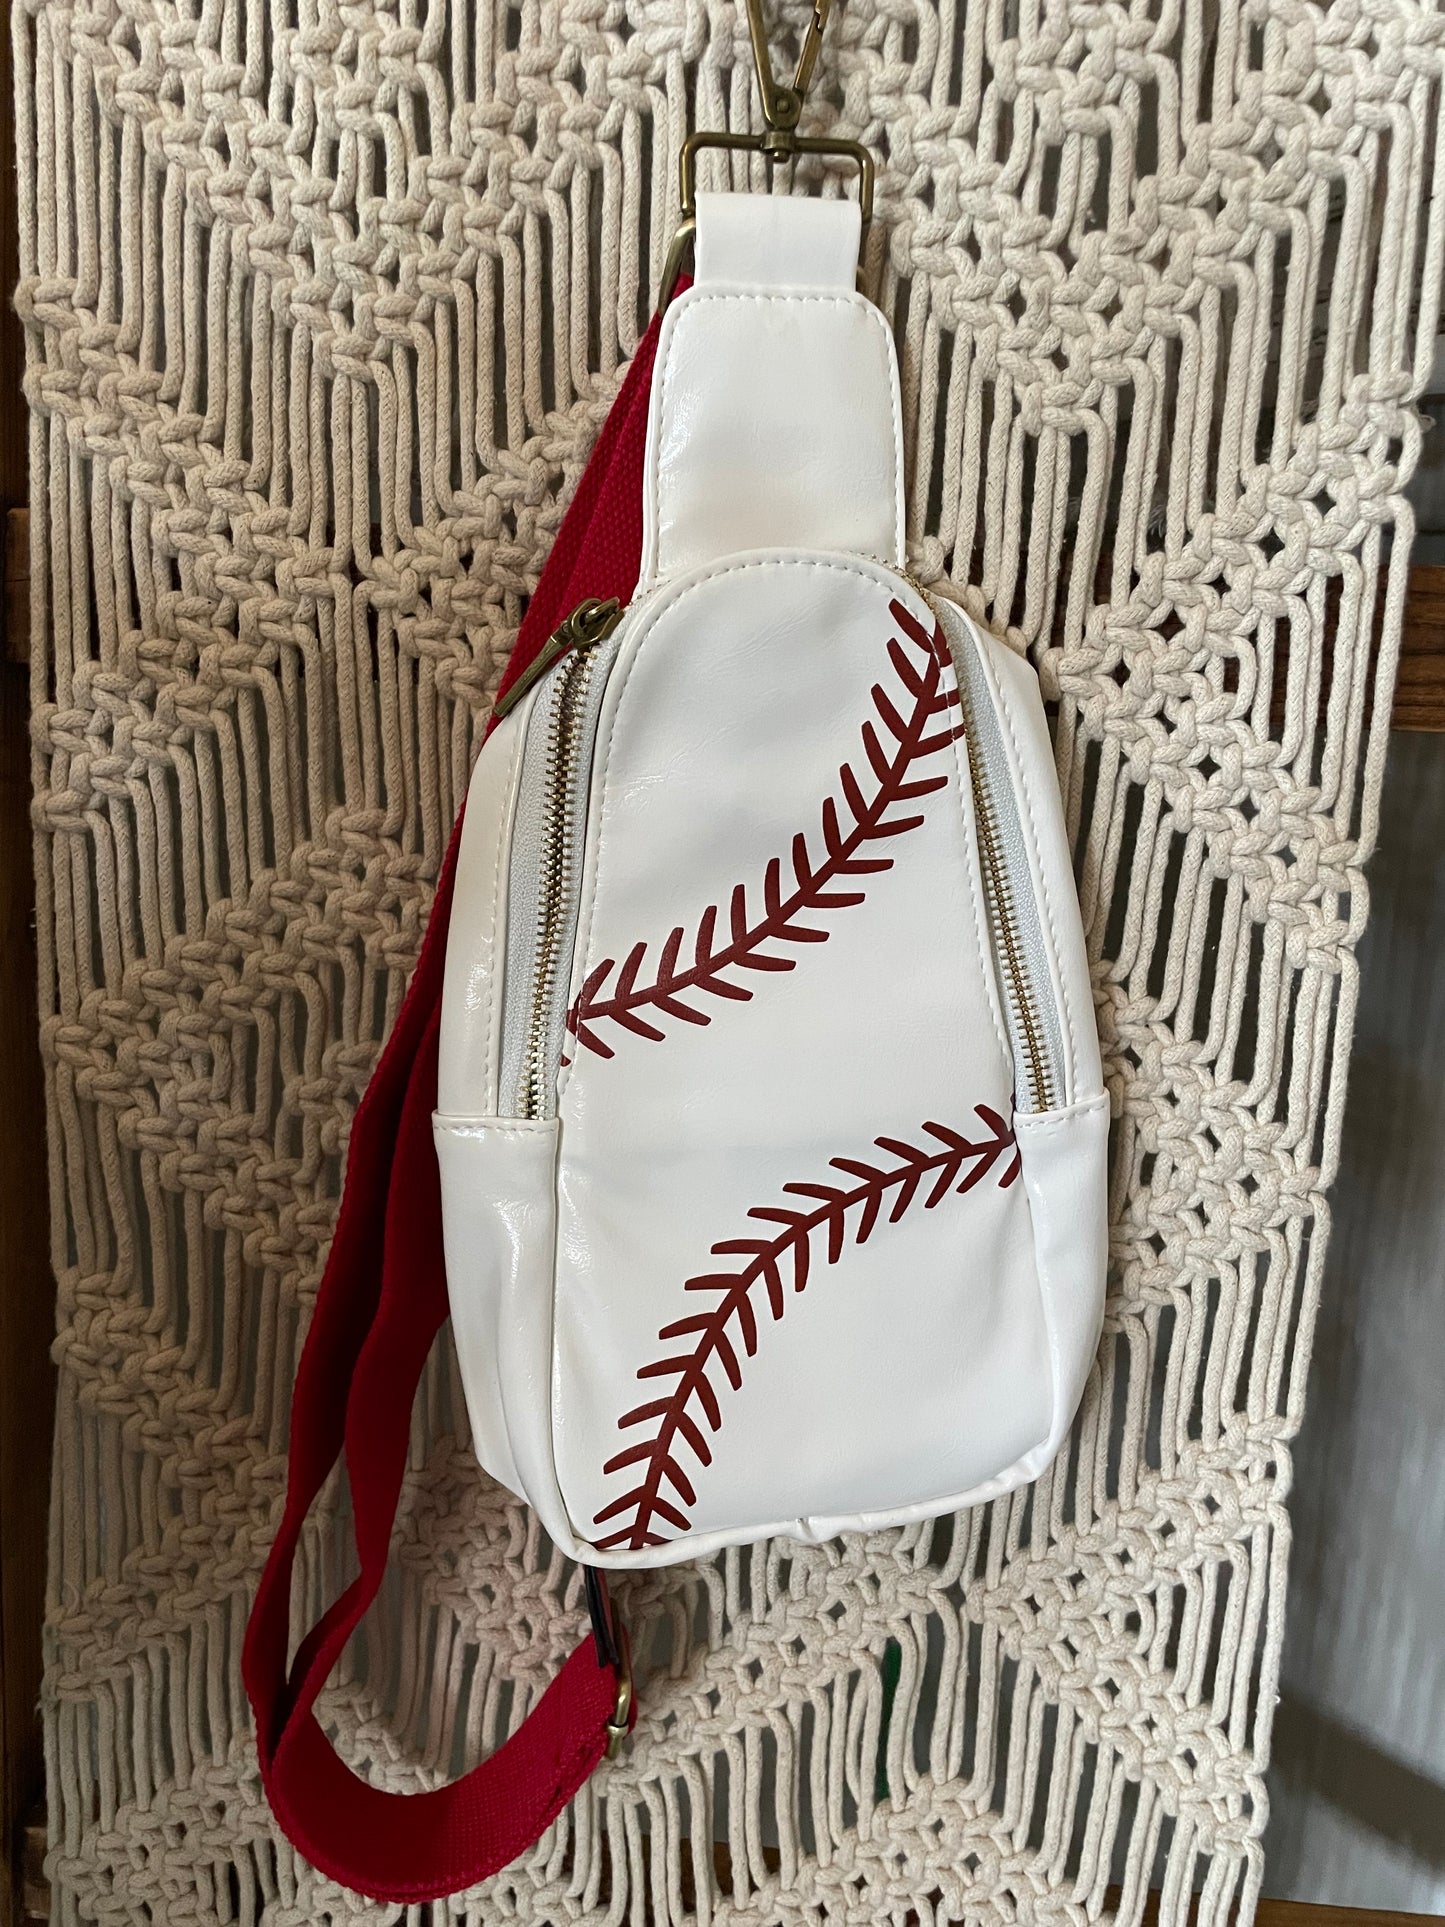 Baseball Cross Body Bag